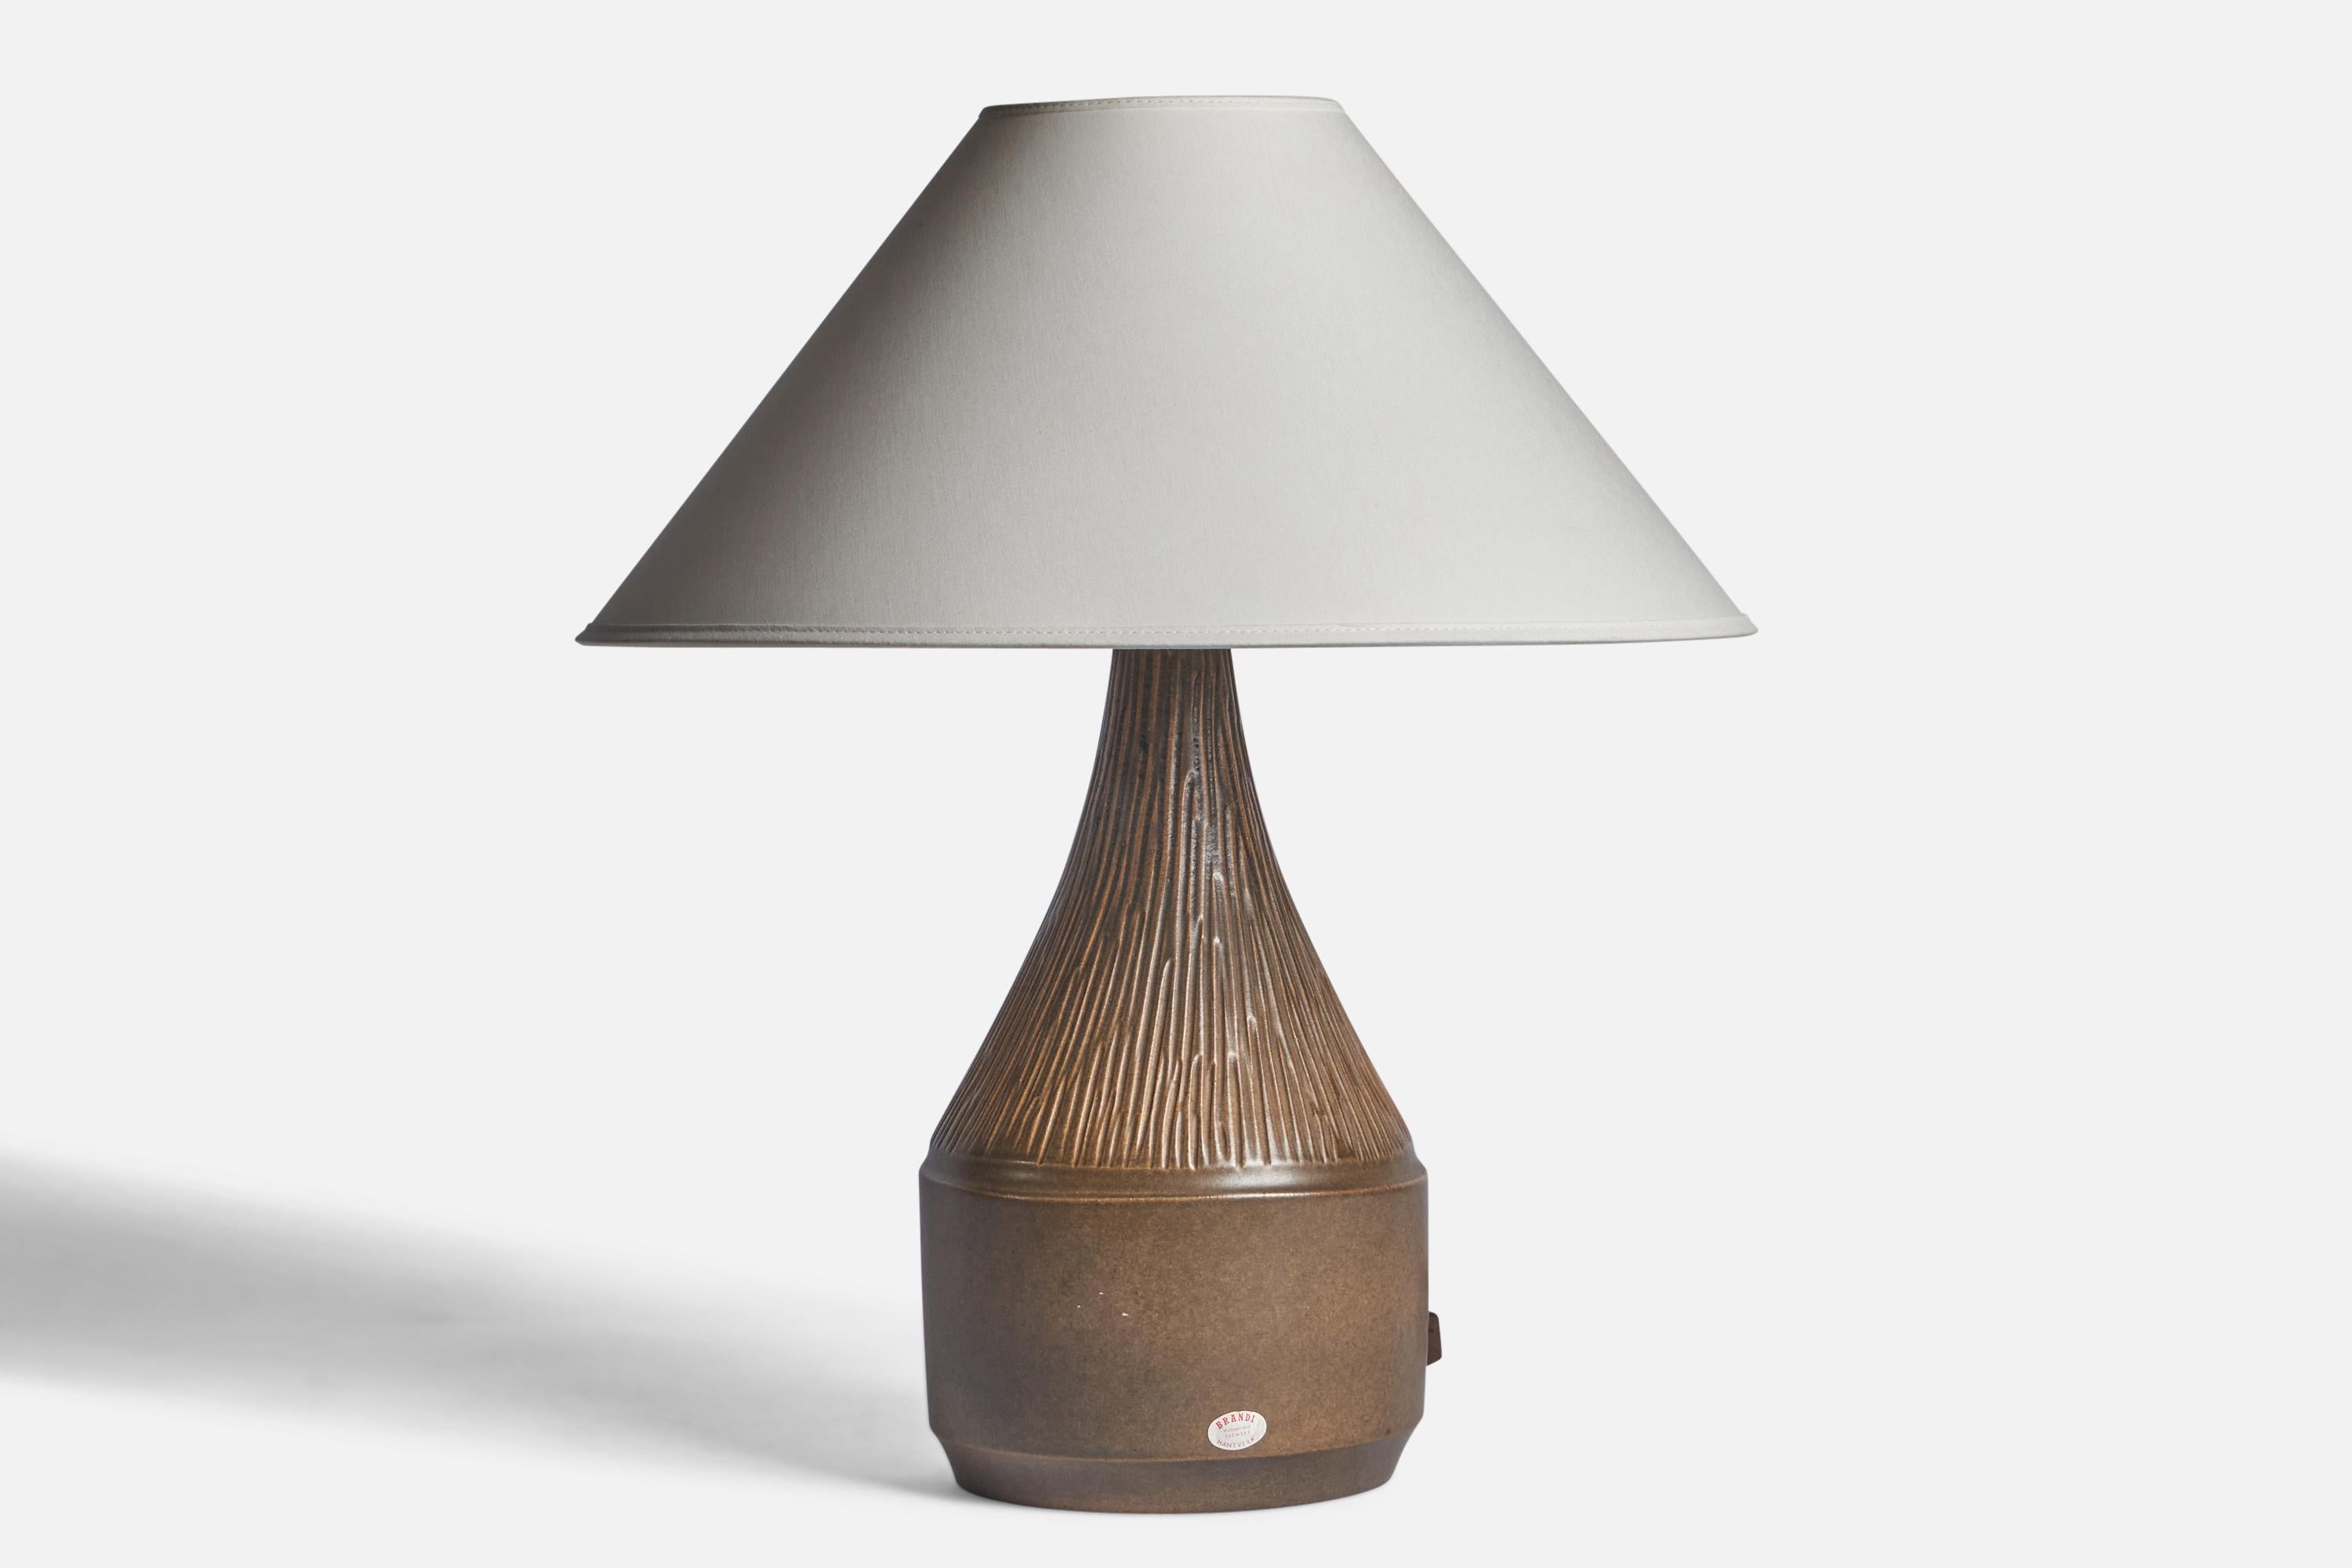 Tischlampe aus braun glasiertem Steingut, entworfen und hergestellt von Henry Brandi, Vejbystrand, Schweden, ca. 1960er Jahre.

Abmessungen der Lampe (Zoll): 14,5